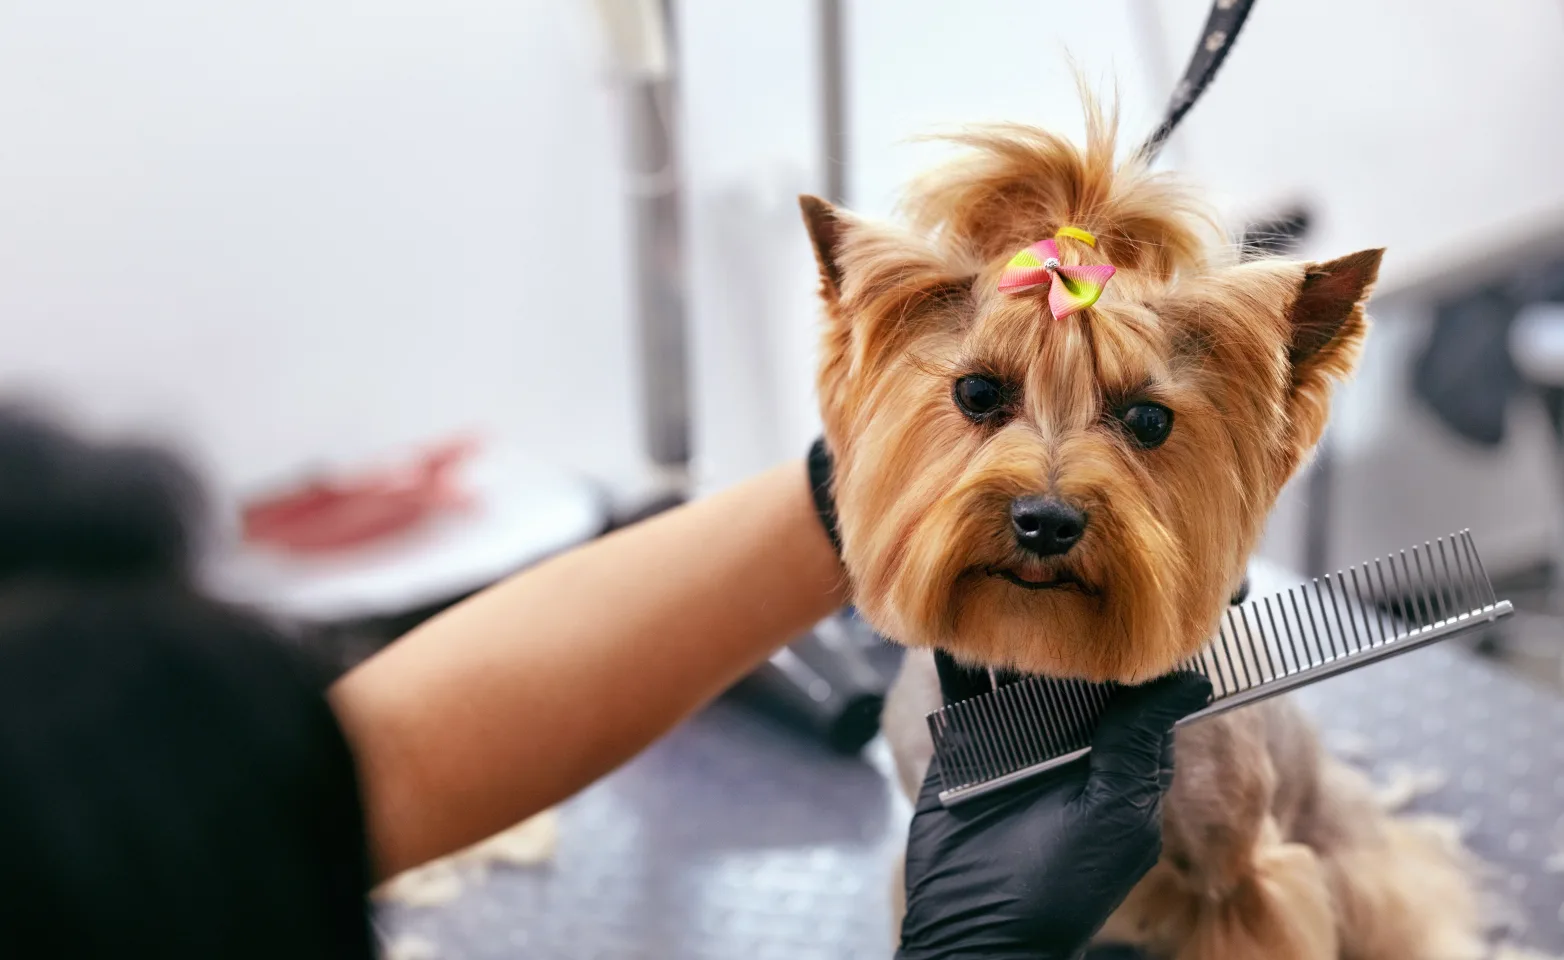 Dog Grooming at Salon